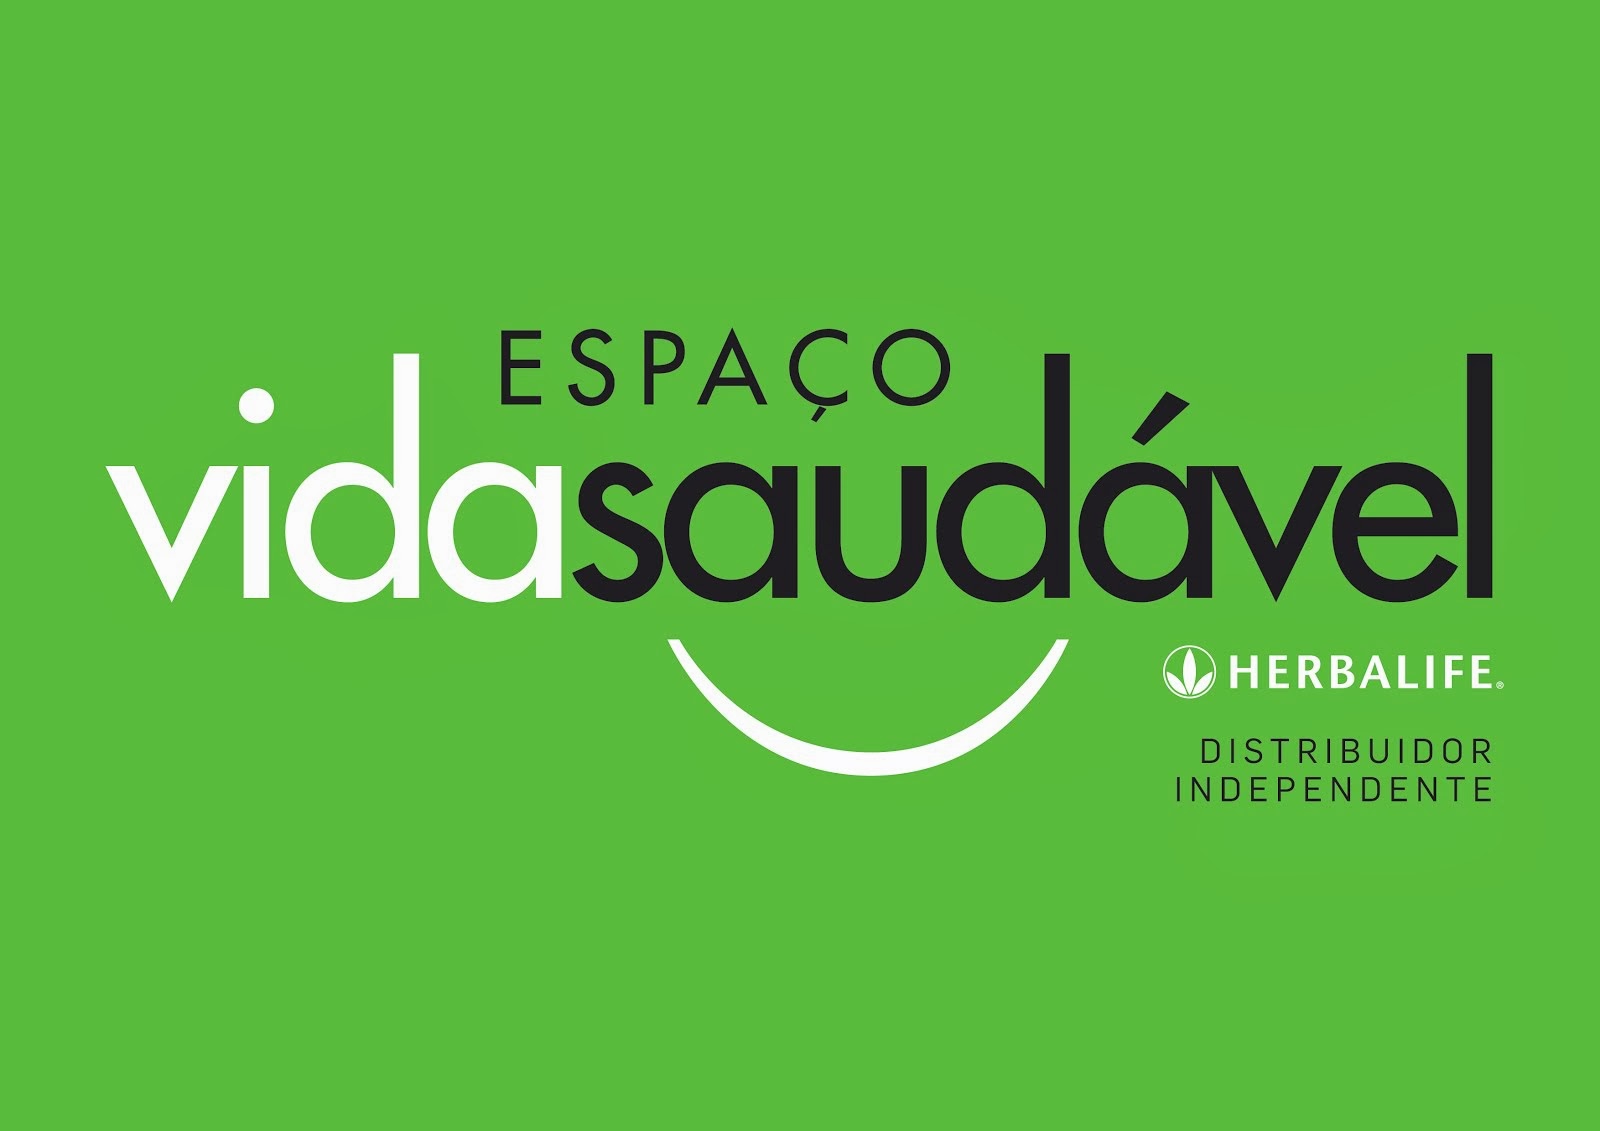 ESPAÇO VIDA SAUDÁVEL HERBALIFE, Salvador - Comentários de